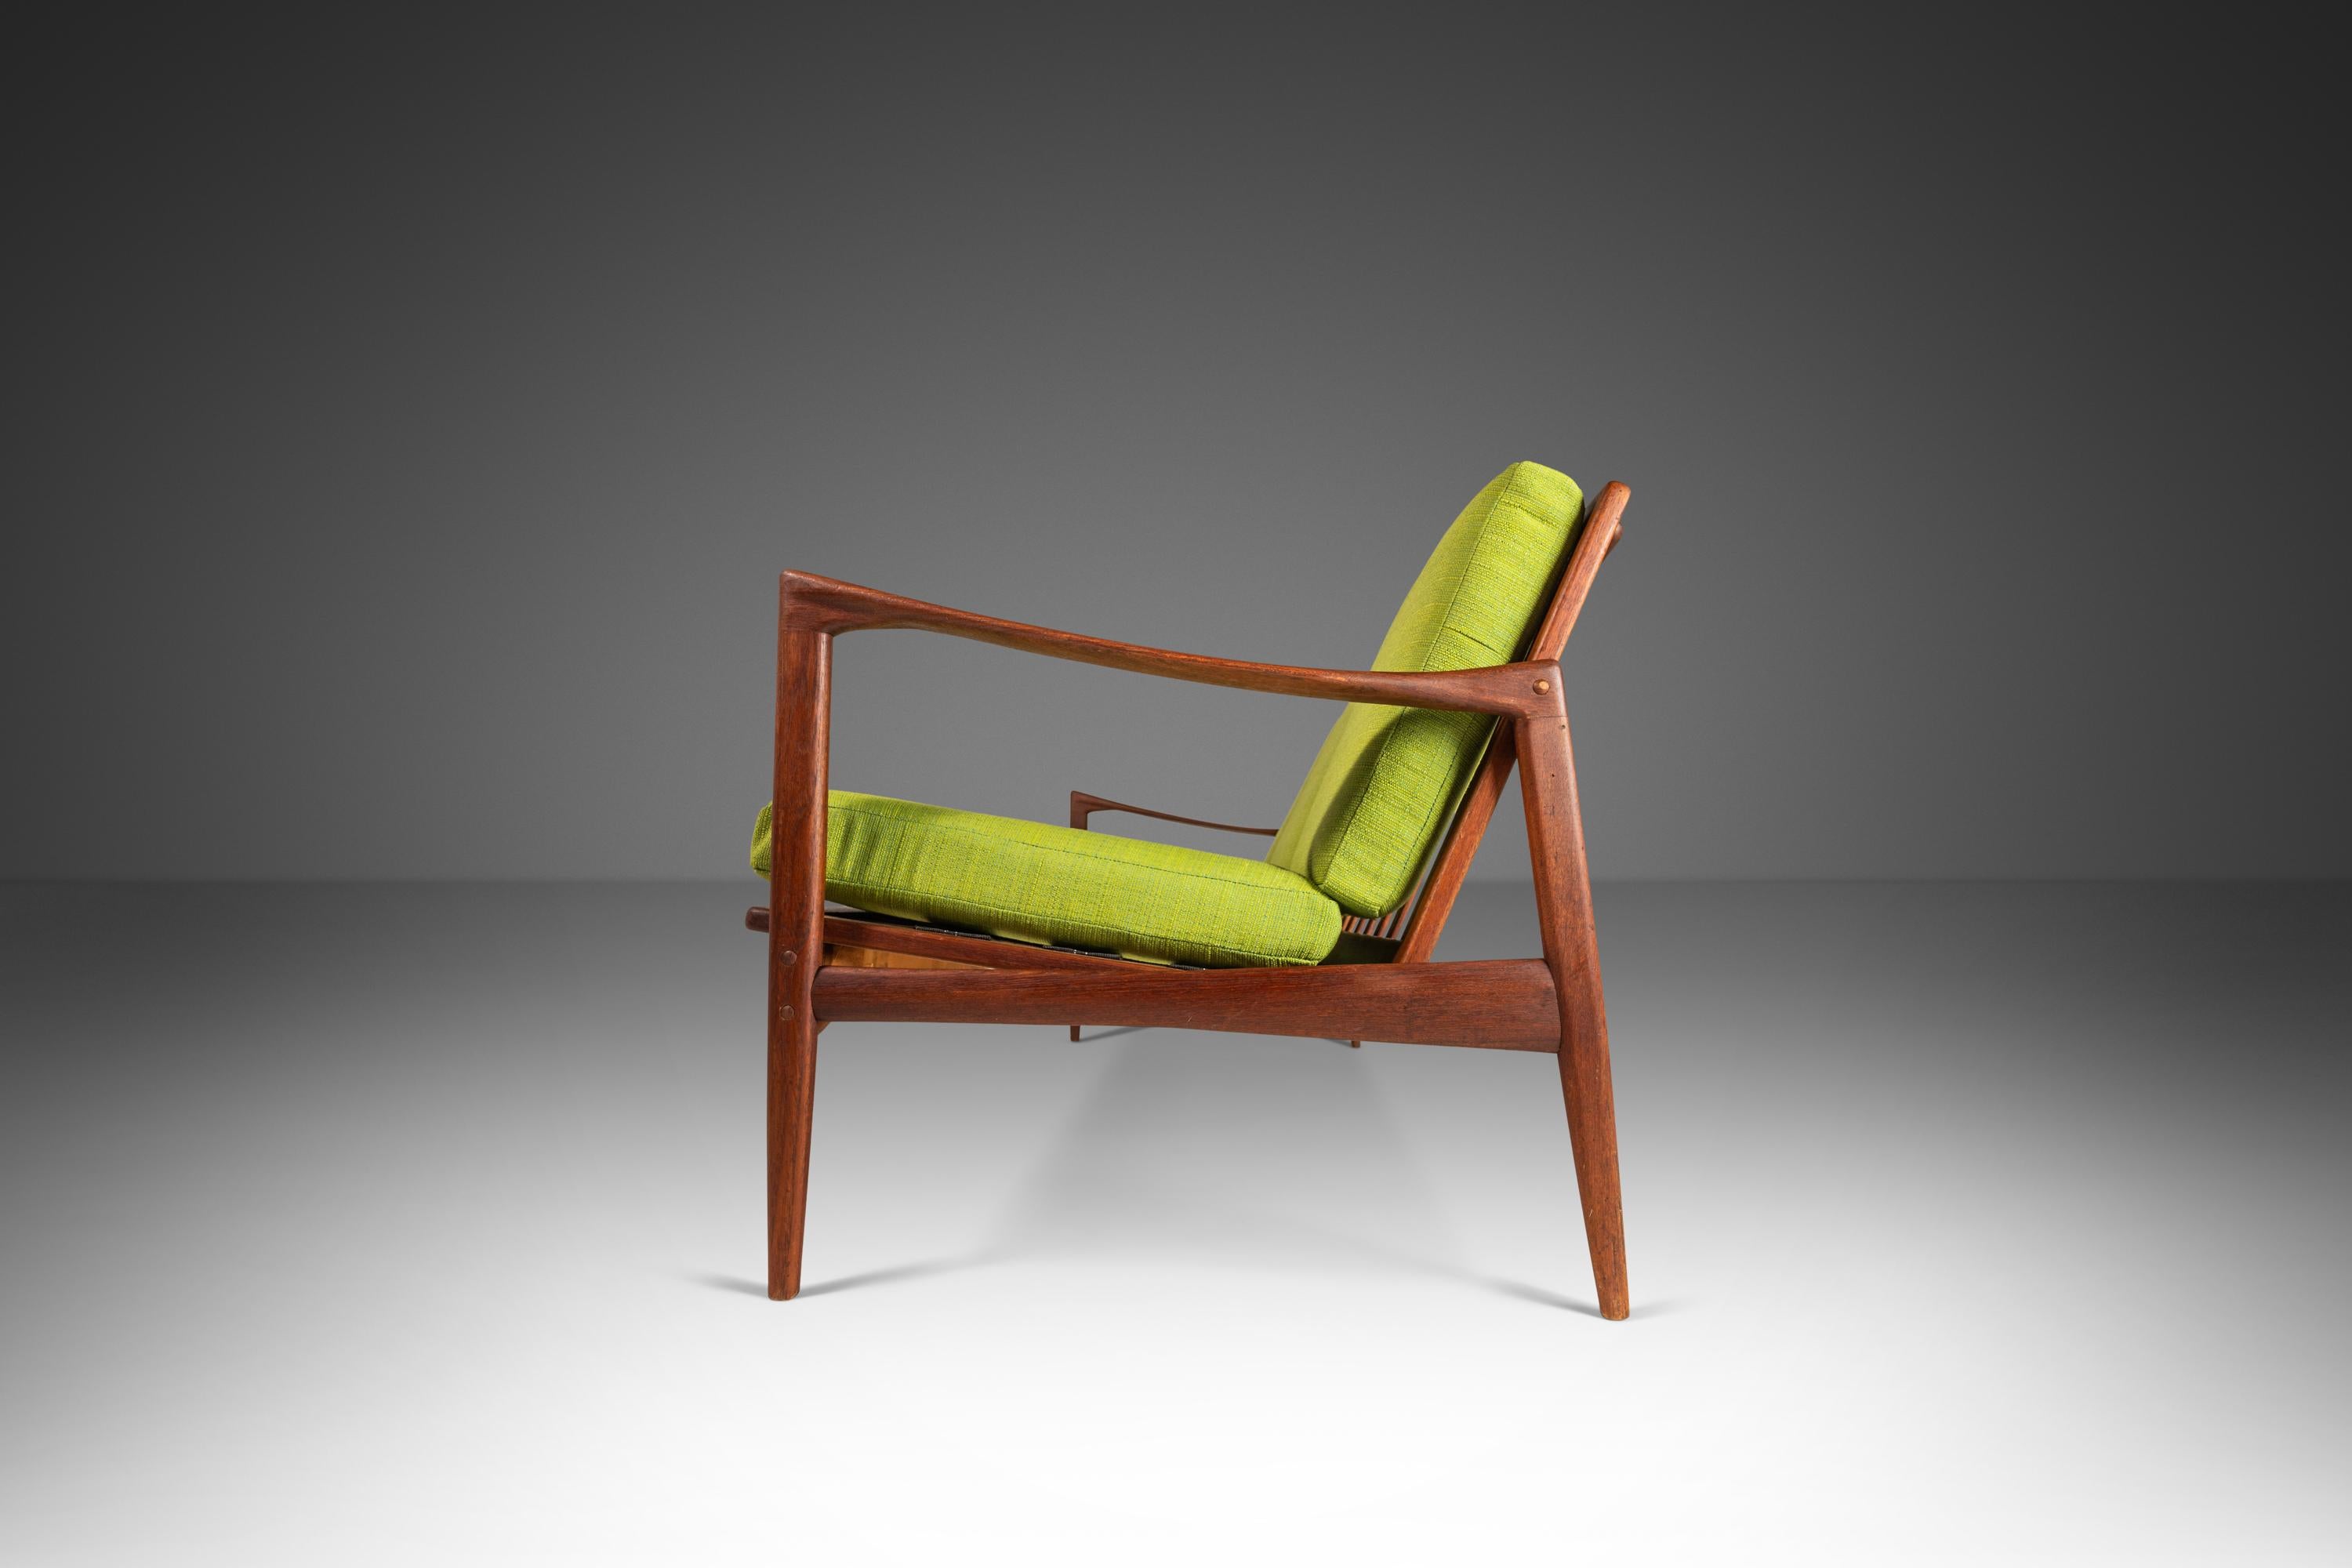 Das dreisitzige Sofa Kandidaten wurde von Ib Kofod-Larsen entworfen und 1962 in Schweden von Olof Perssons Fatoljindustri (O.P.E.) hergestellt. Dieses ikonische Design aus massivem Teakholz zeichnet sich durch zylindrische, konisch zulaufende Beine